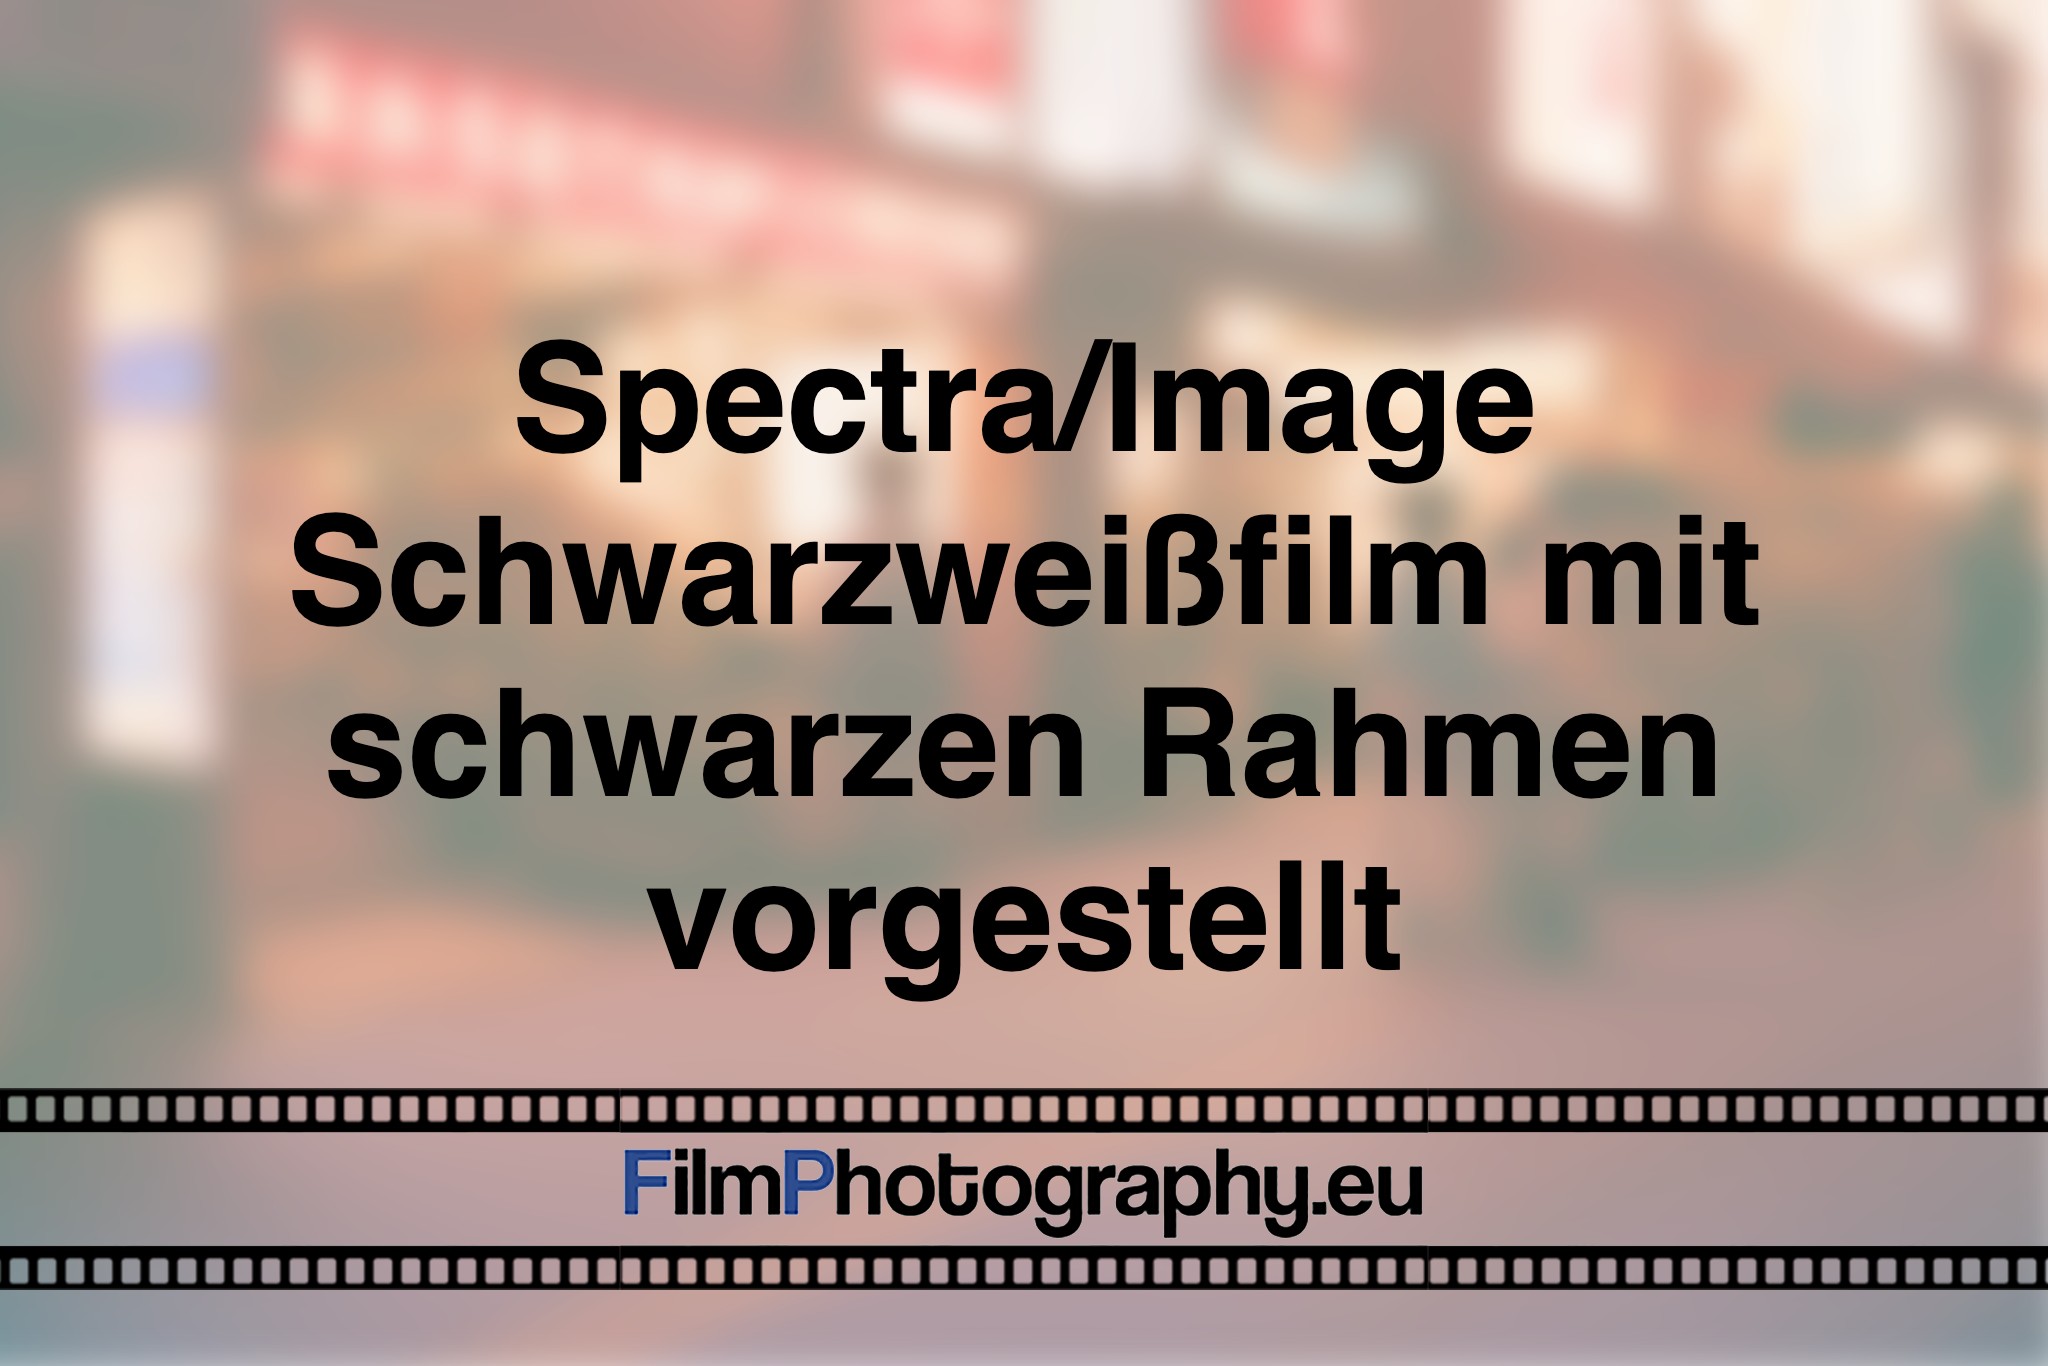 spectra-image-schwarzweißfilm-mit-schwarzen-rahmen-vorgestellt-photo-bnv